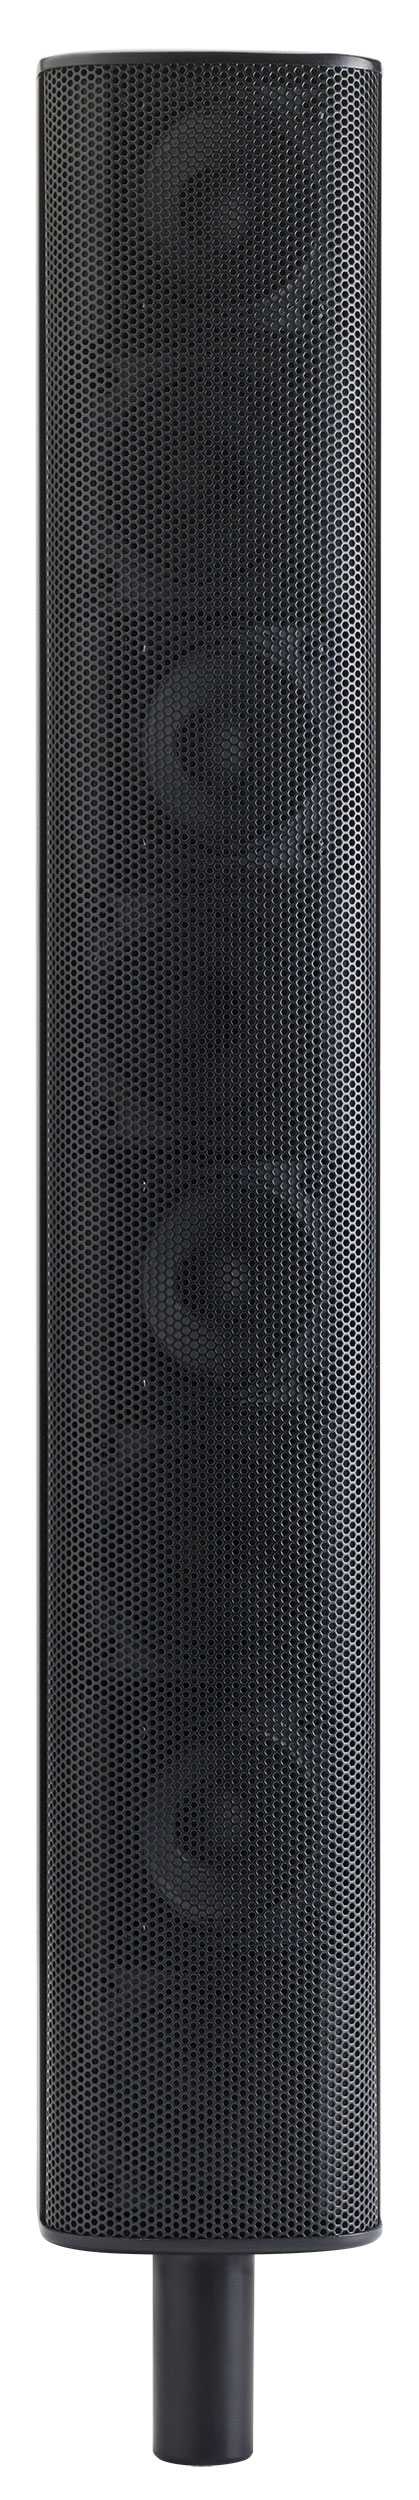 Audiophony Equipments iLINE 83B speaker front